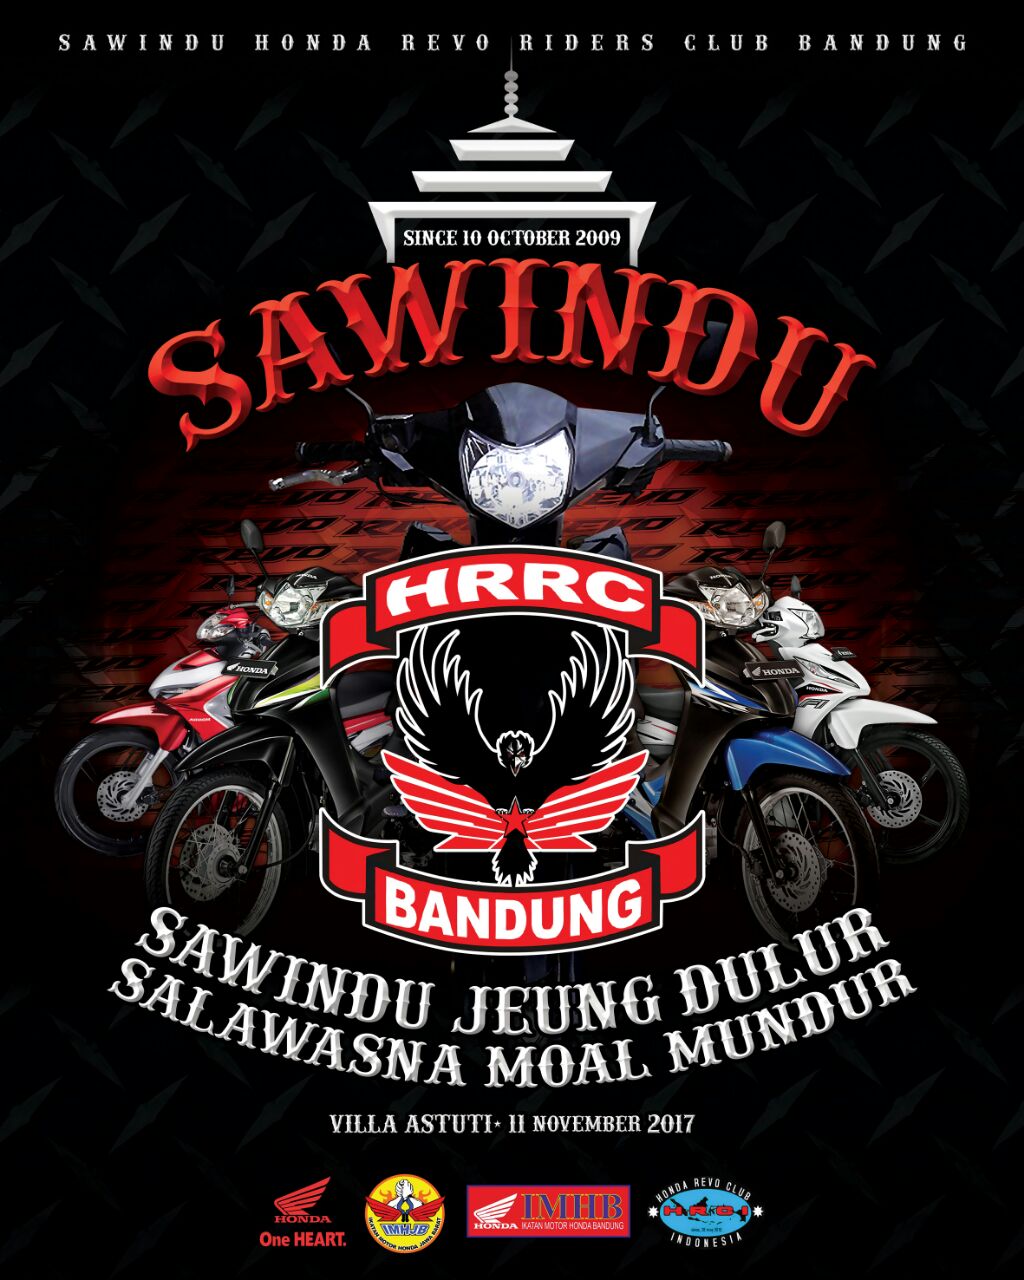 Honda Community - Undangan Sawindu Honda Revo Riders Club Bandung